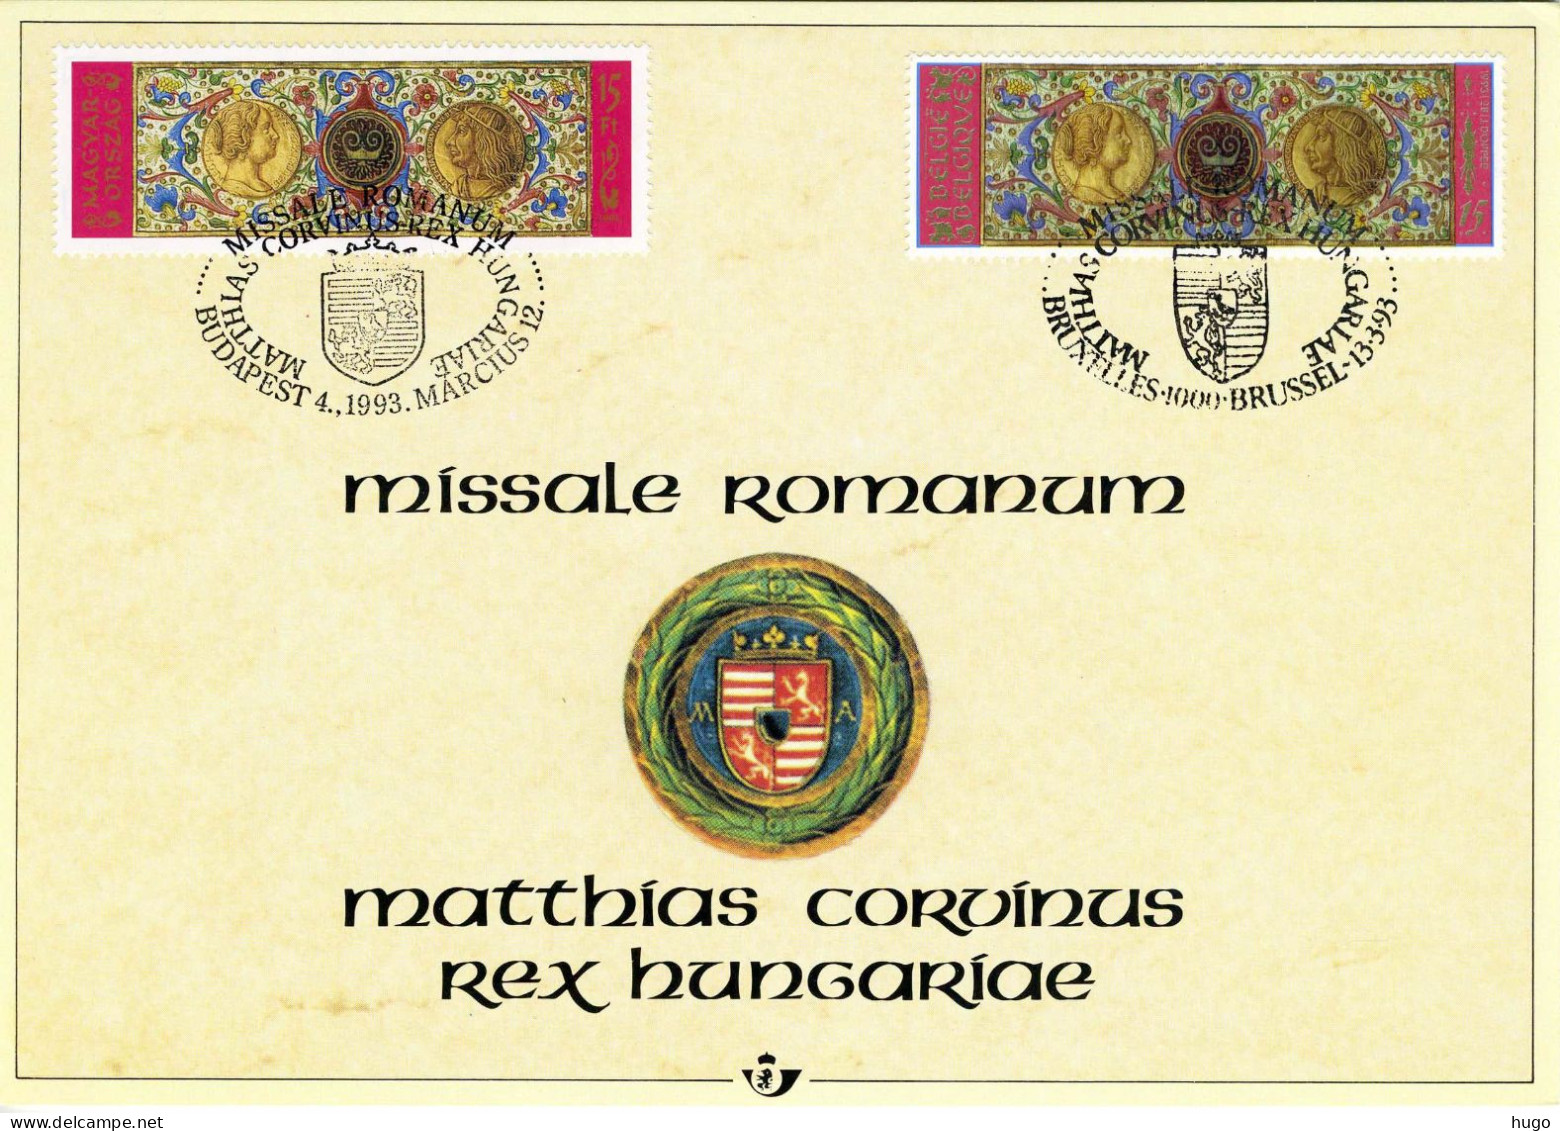 (B) Geschiedenis Gemeenschappelijk Uitgifte Hongarije 2492HK - 1993 - 2 - Cartes Souvenir – Emissions Communes [HK]